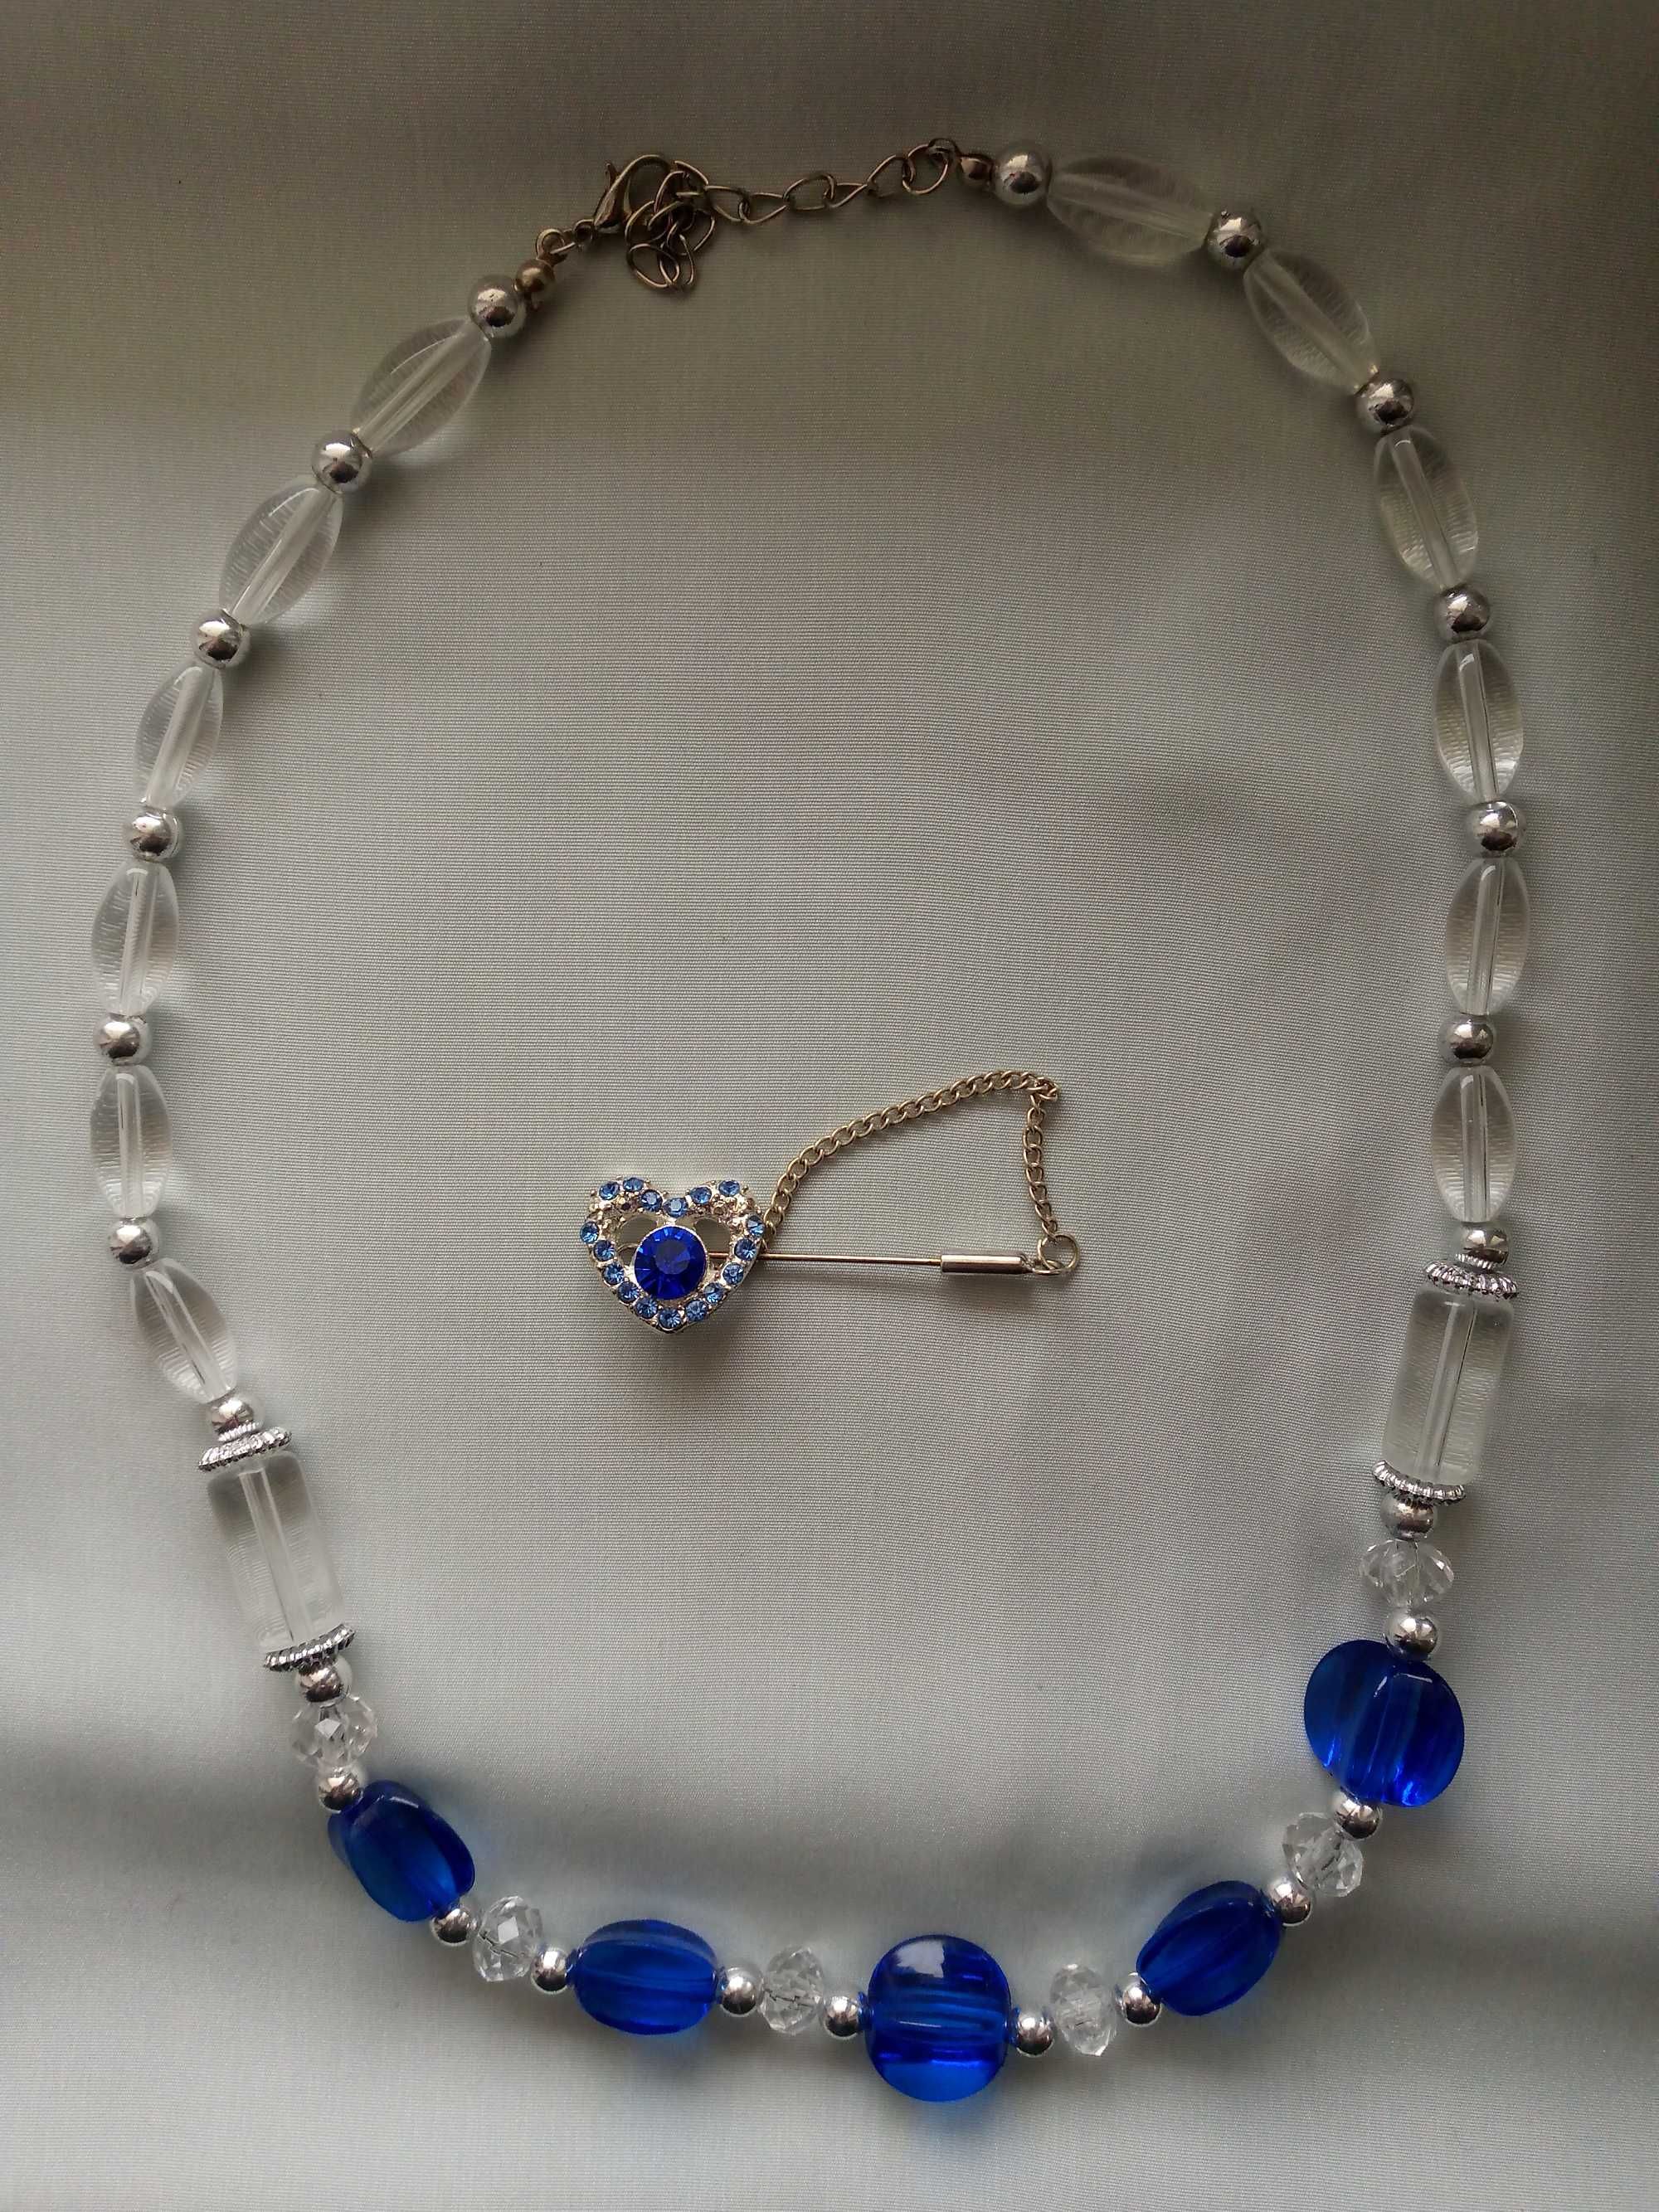 Новое ожерелье бусы с брошками(см фото) Цена за все 100 тыс